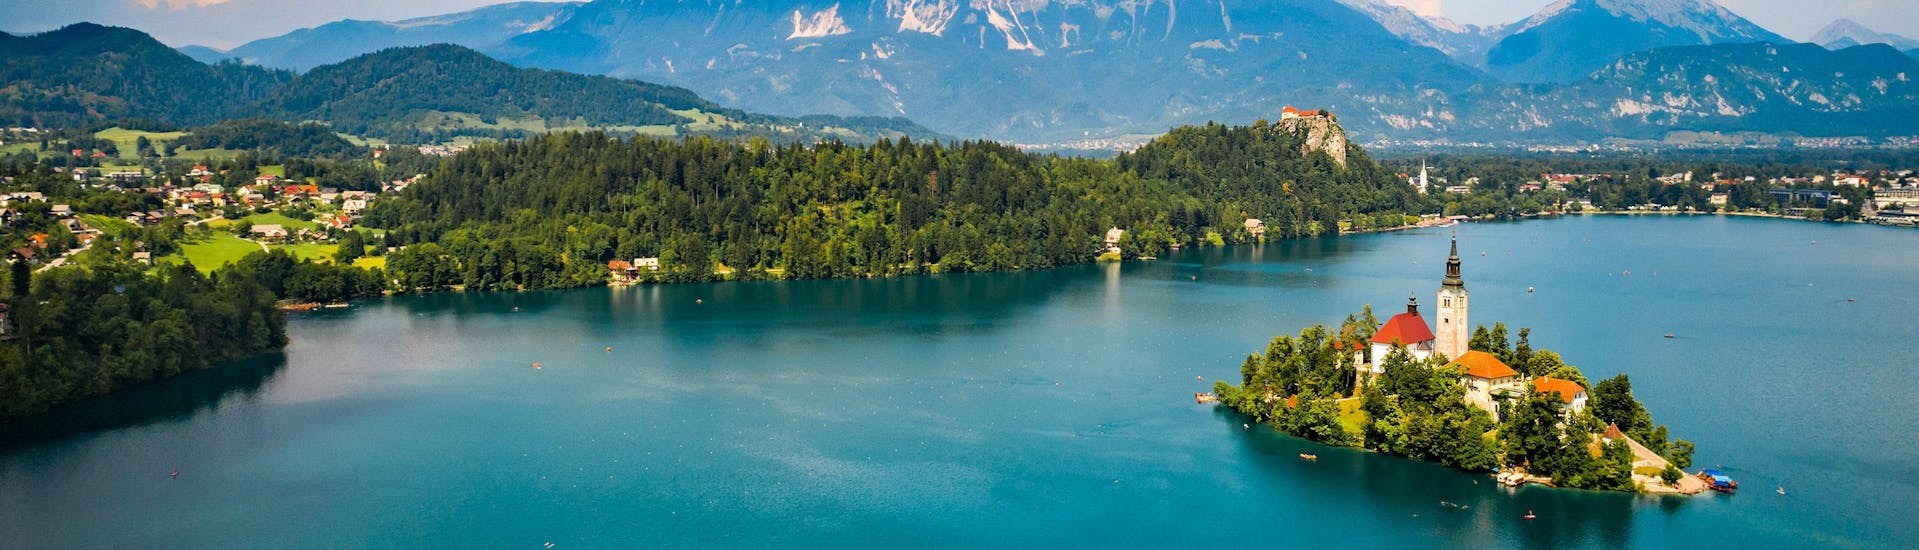 Uitzicht over het prachtige meer van Bled, een populaire bestemming voor paragliding. 